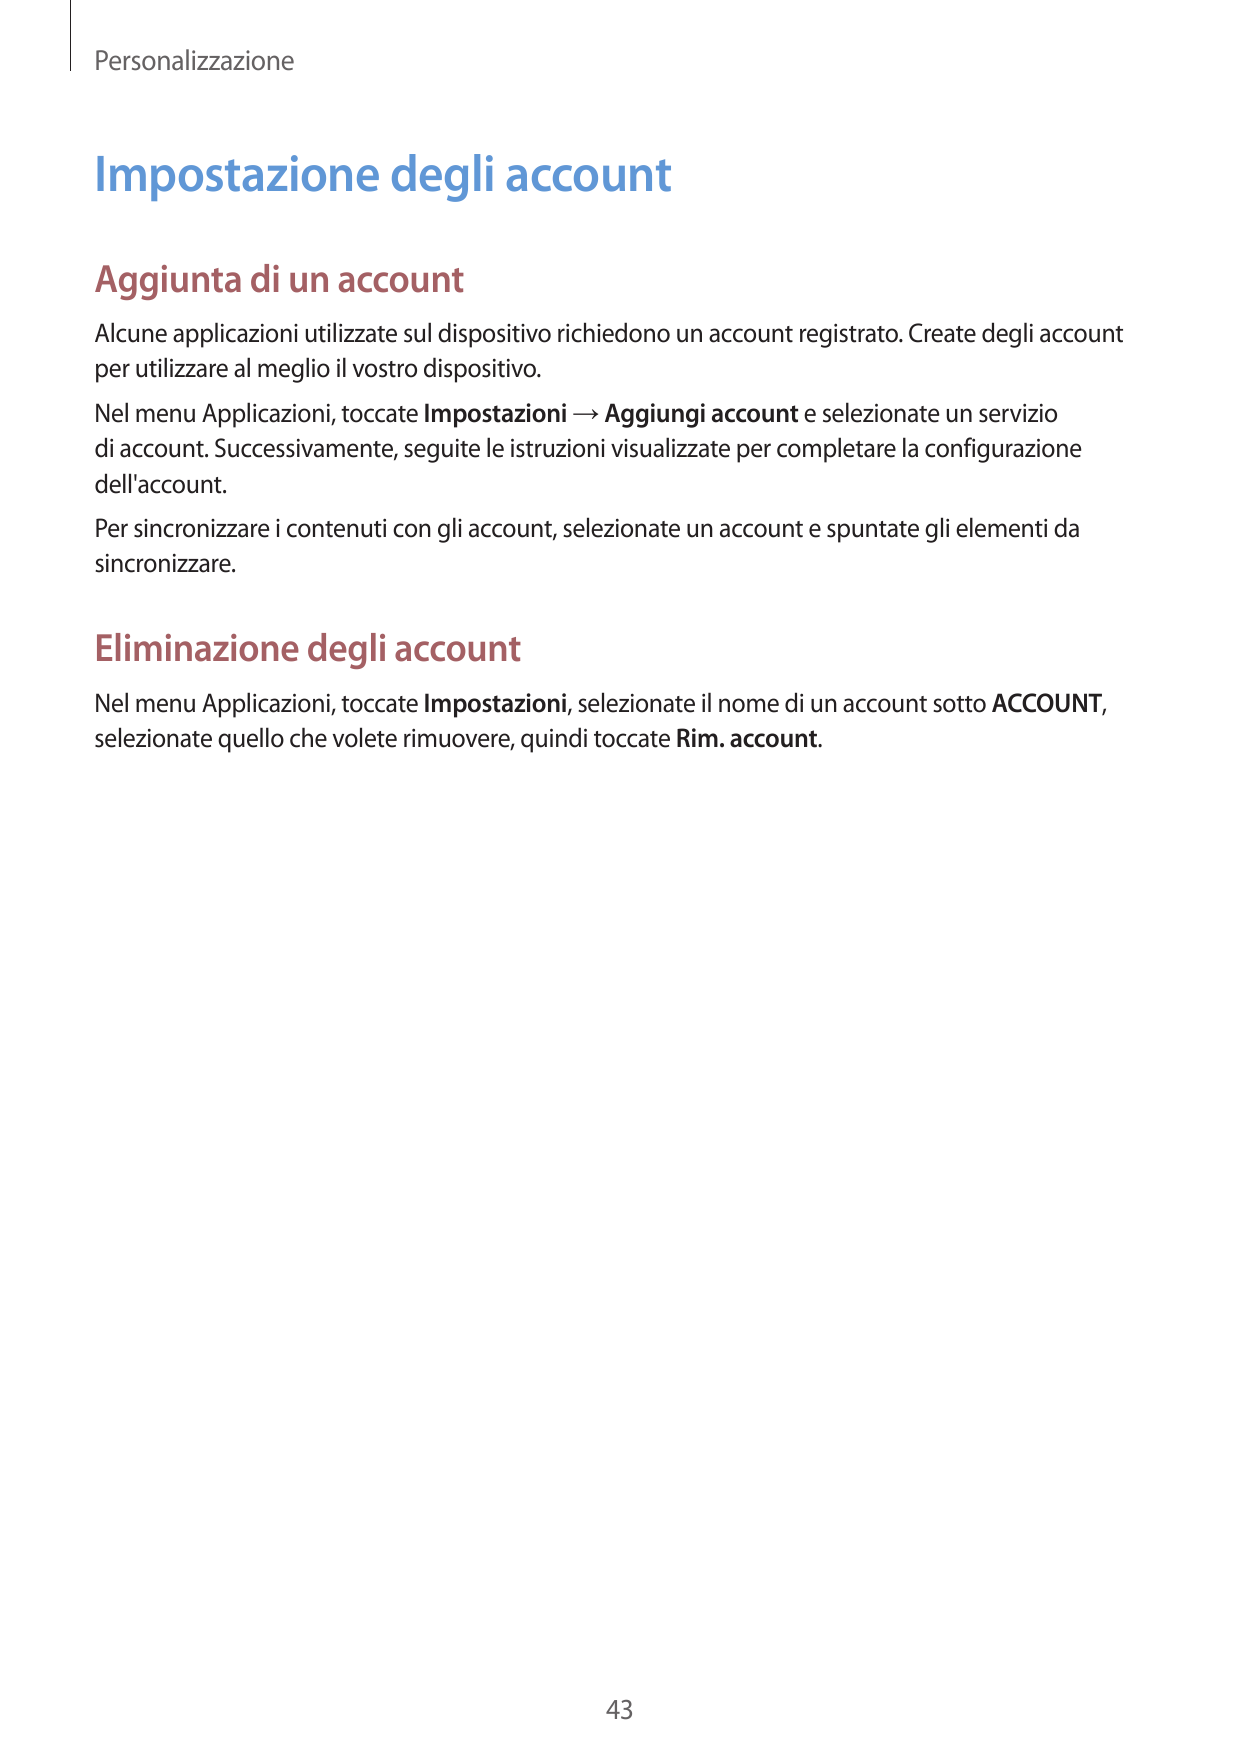 PersonalizzazioneImpostazione degli accountAggiunta di un accountAlcune applicazioni utilizzate sul dispositivo richiedono un ac